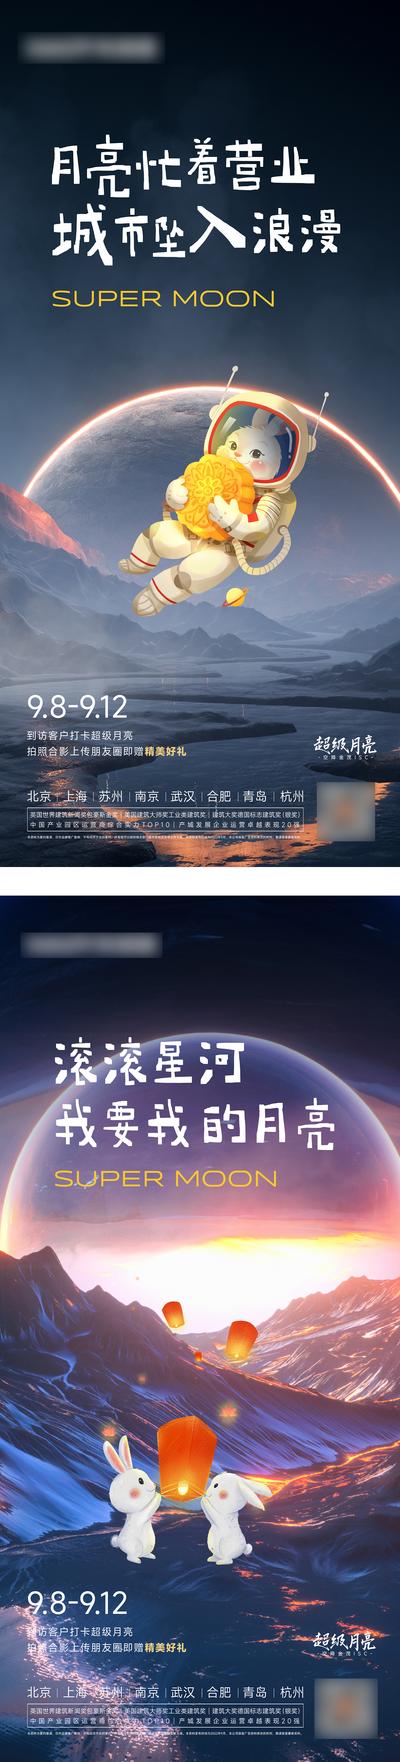 南门网 中秋超级月亮活动海报